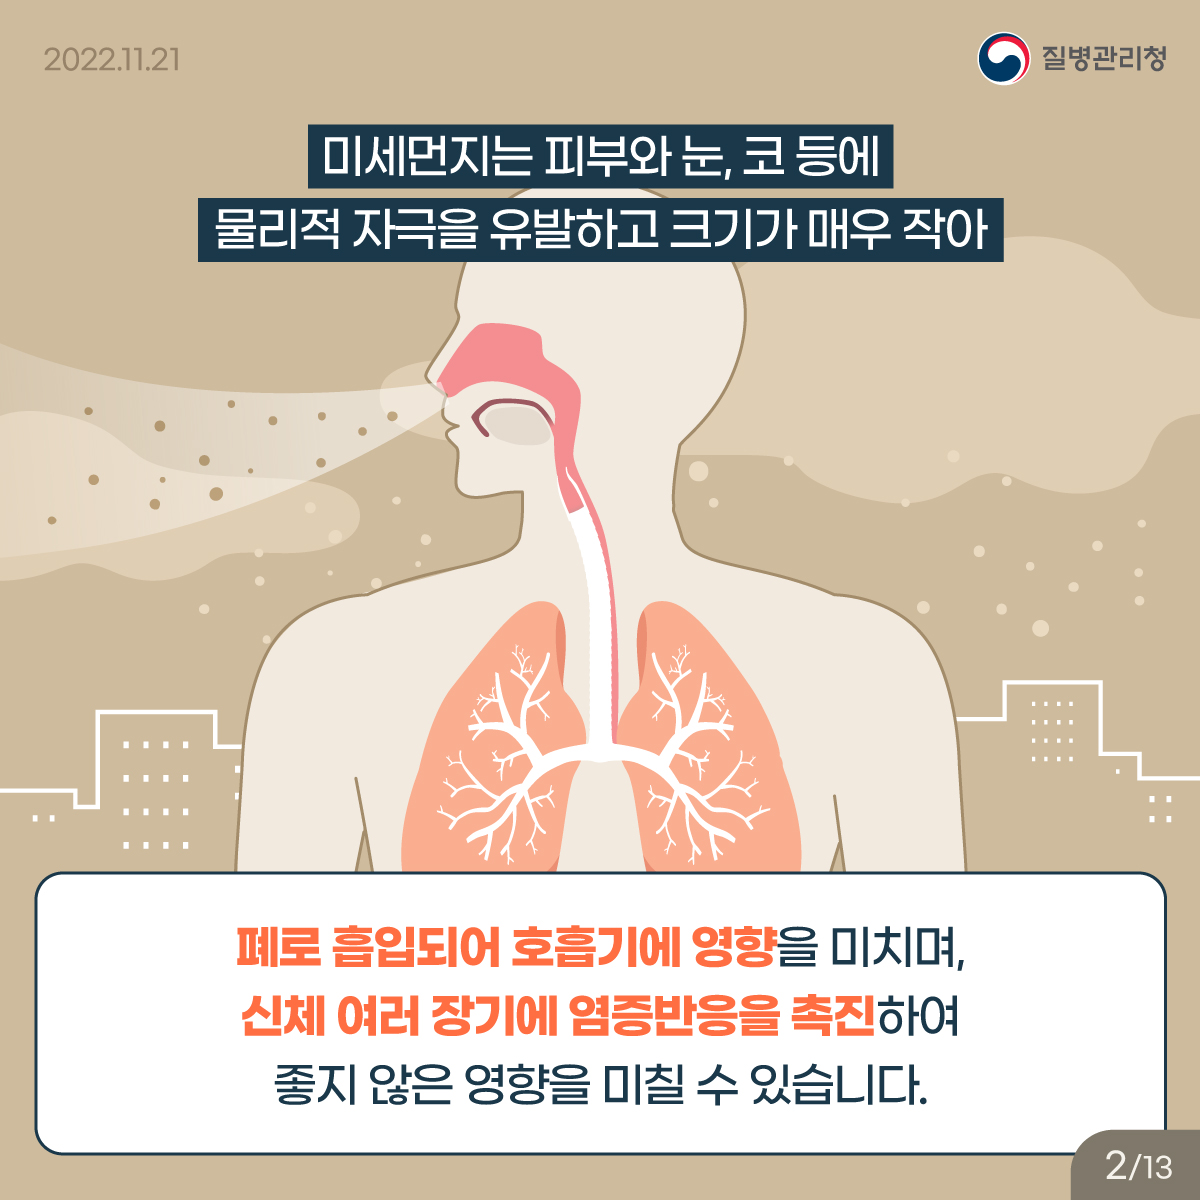 미세먼지는 피부와 눈, 코 등에 물리적 자극을 유발하고 크기가 매우 작아 폐로 흡입되어 호흡기에 영향을 미치며, 신체 여러 장기에 염증반응을 촉진하여 좋지 않은 영향을 미칠 수 있습니다.